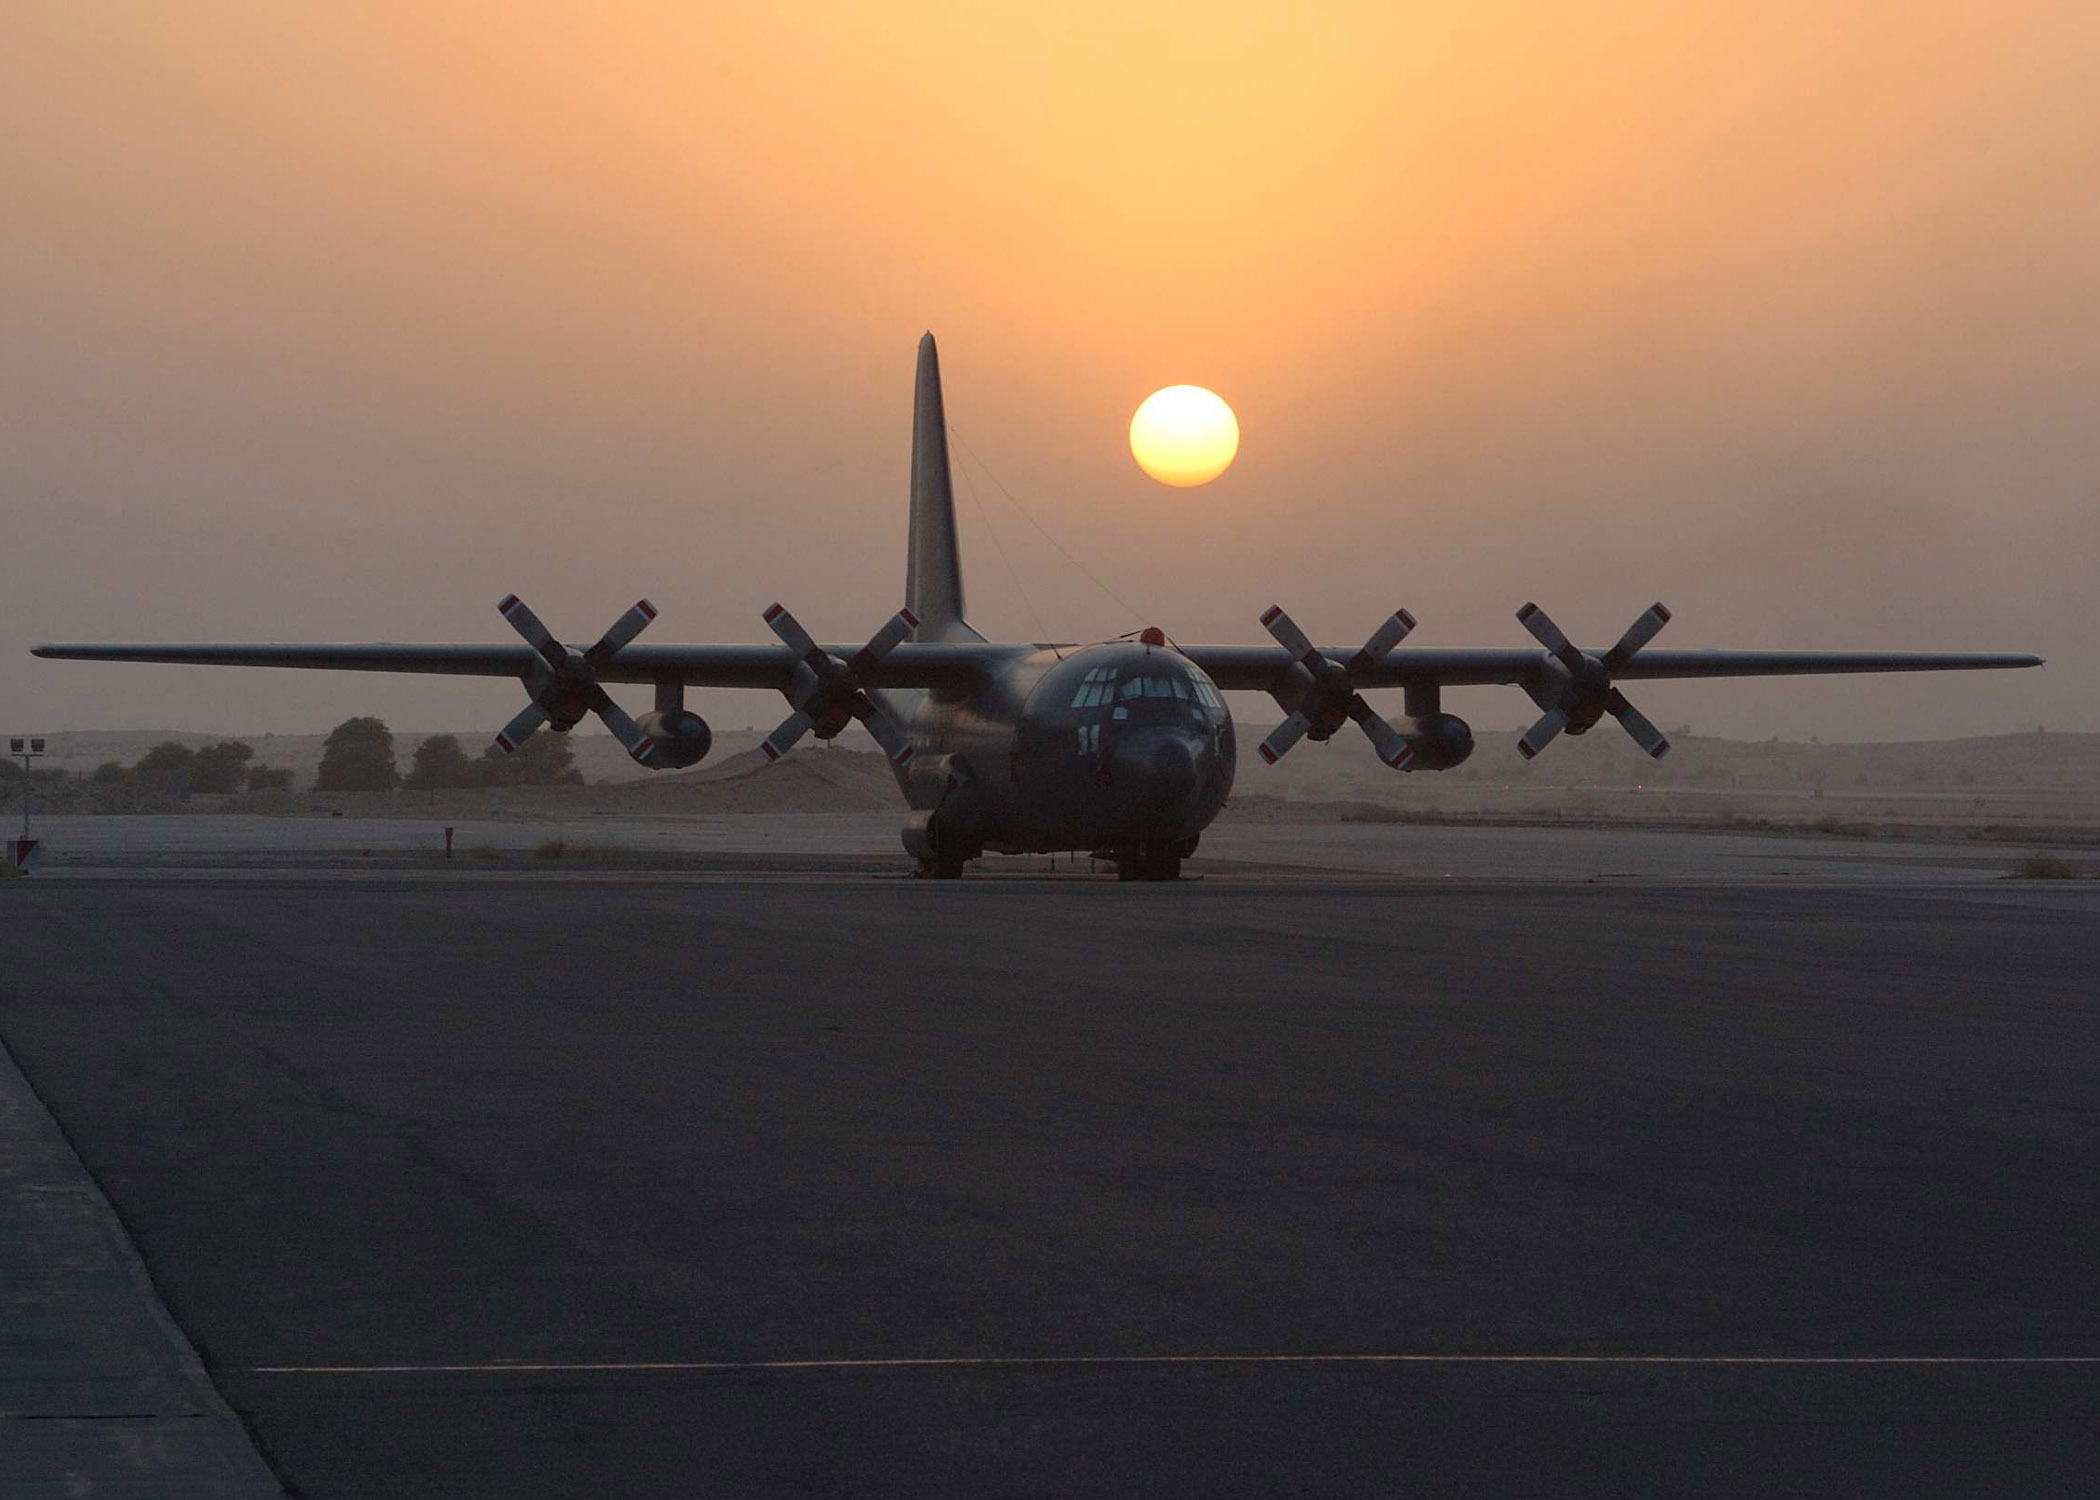 Un gros avion doté de quatre moteurs à hélice sur une piste d’aviation pendant un coucher du soleil.